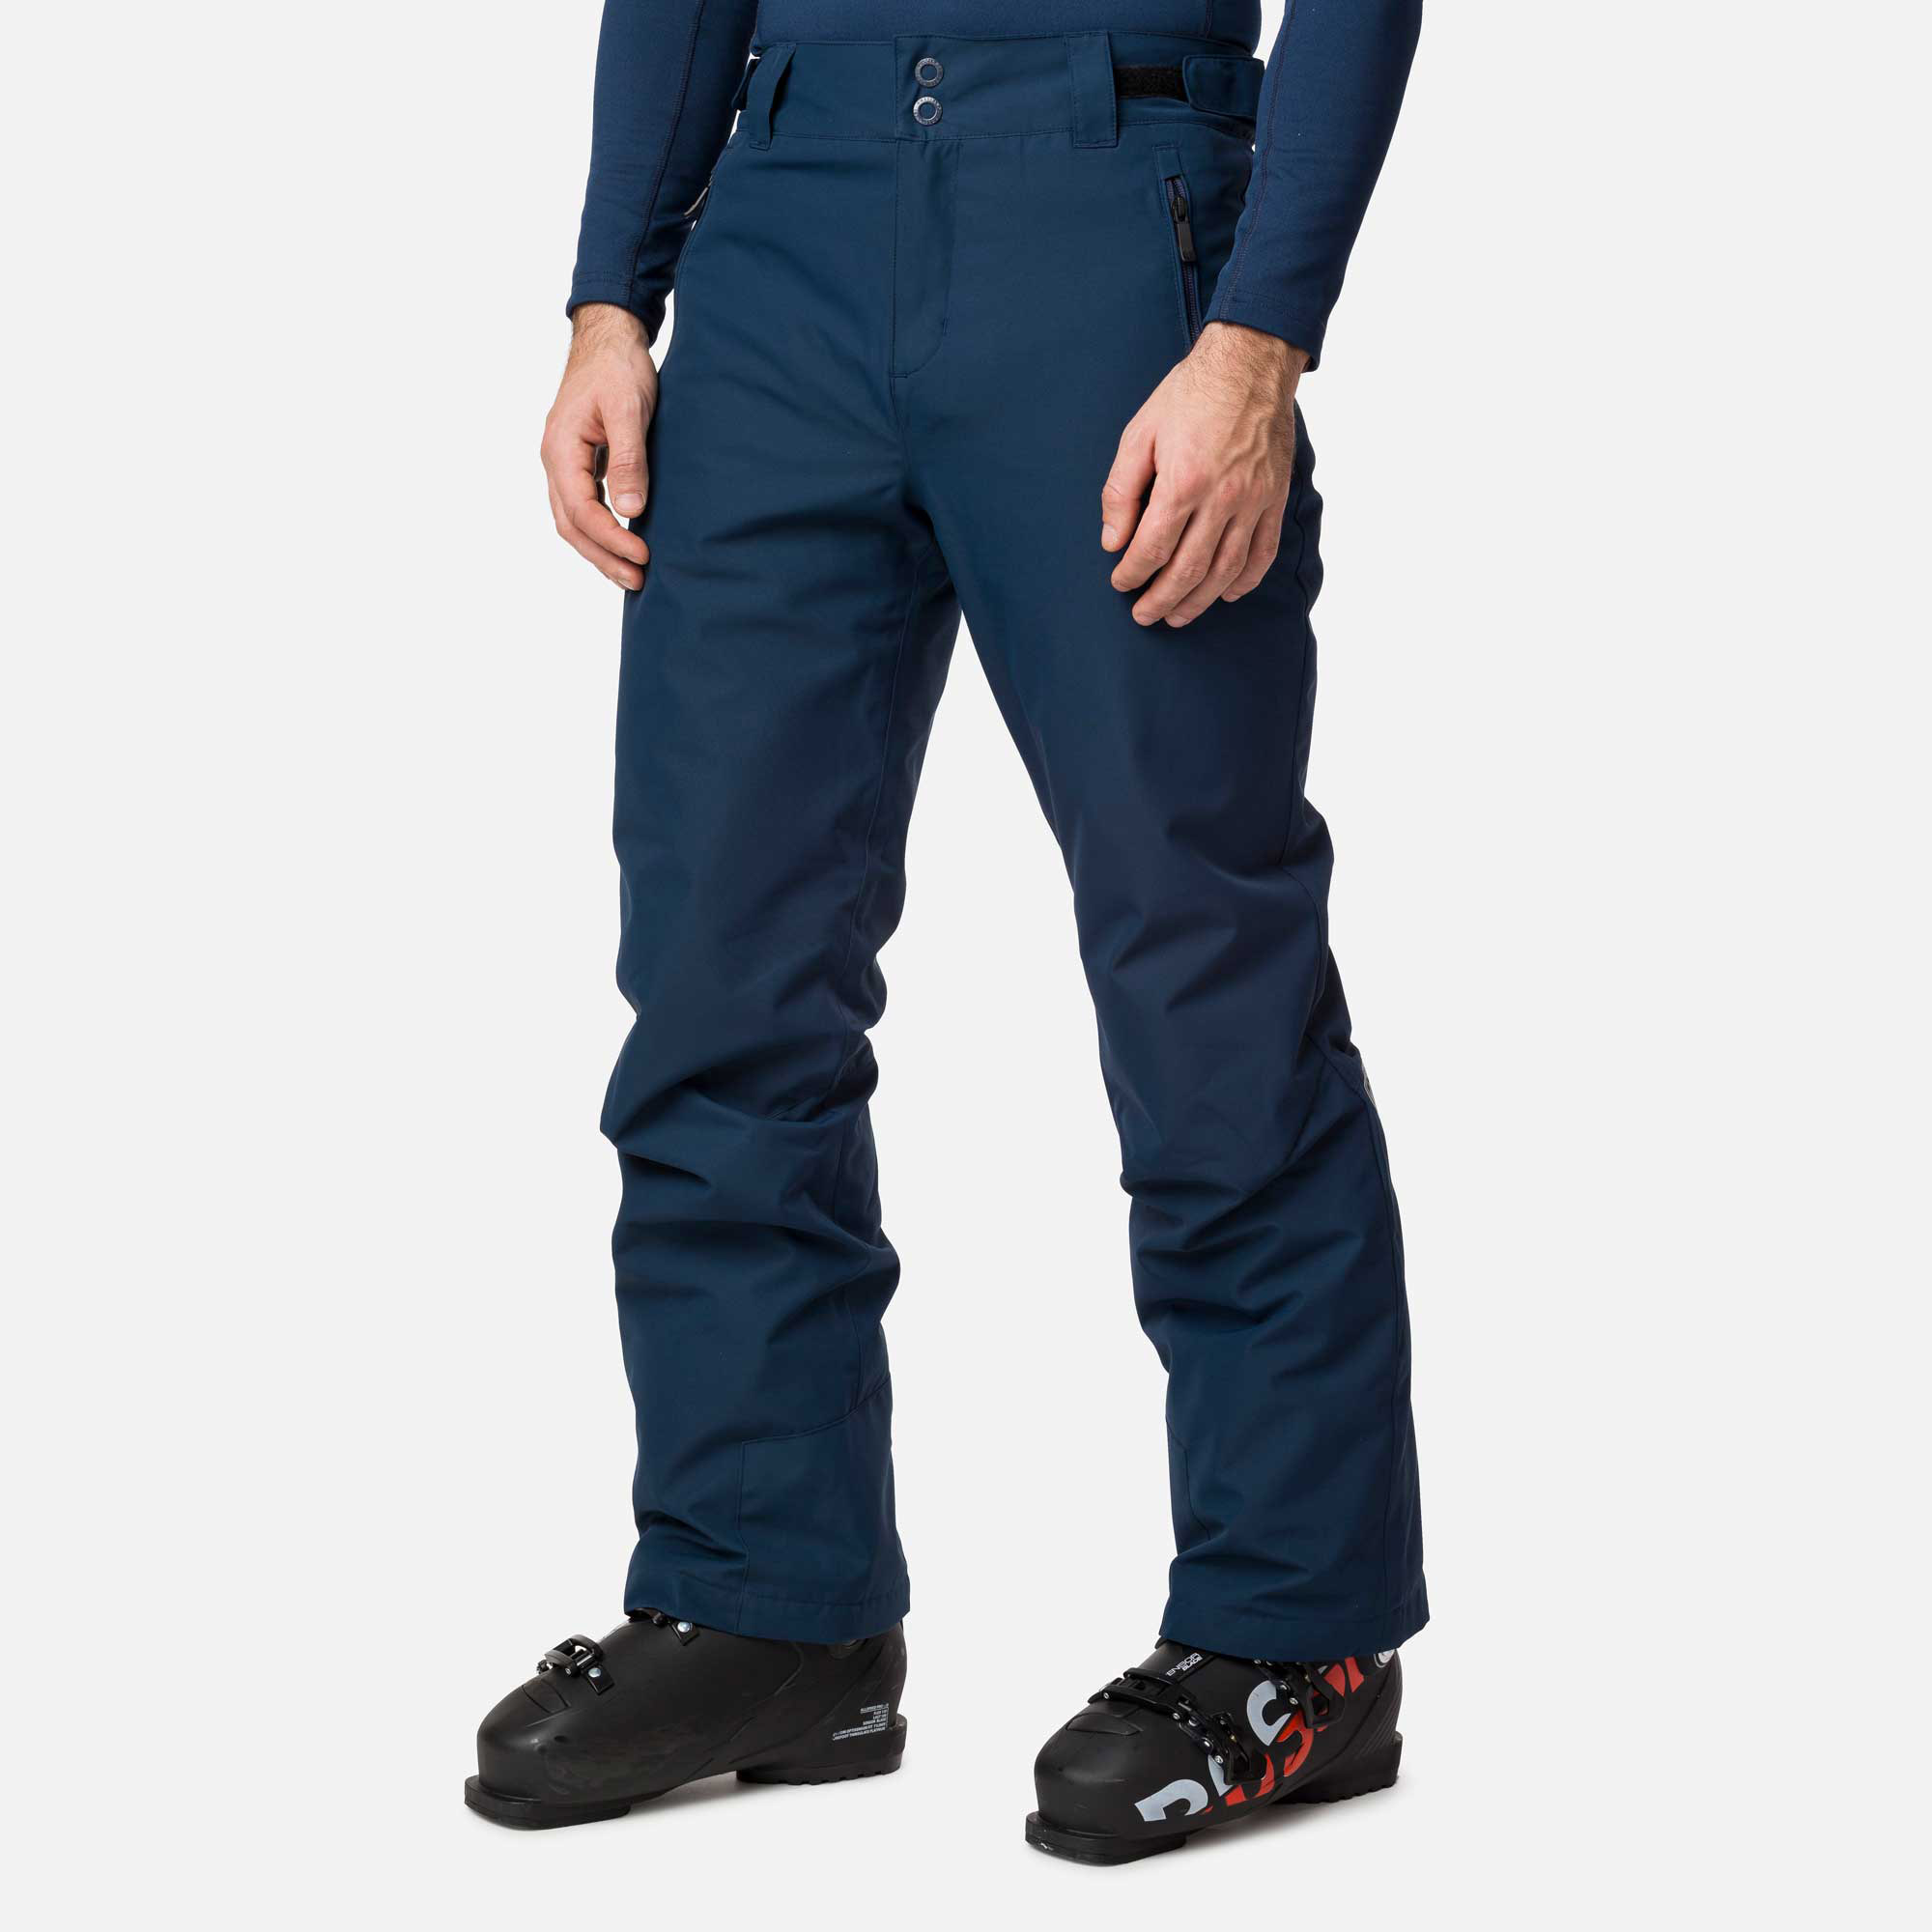 Men’s ski trousers